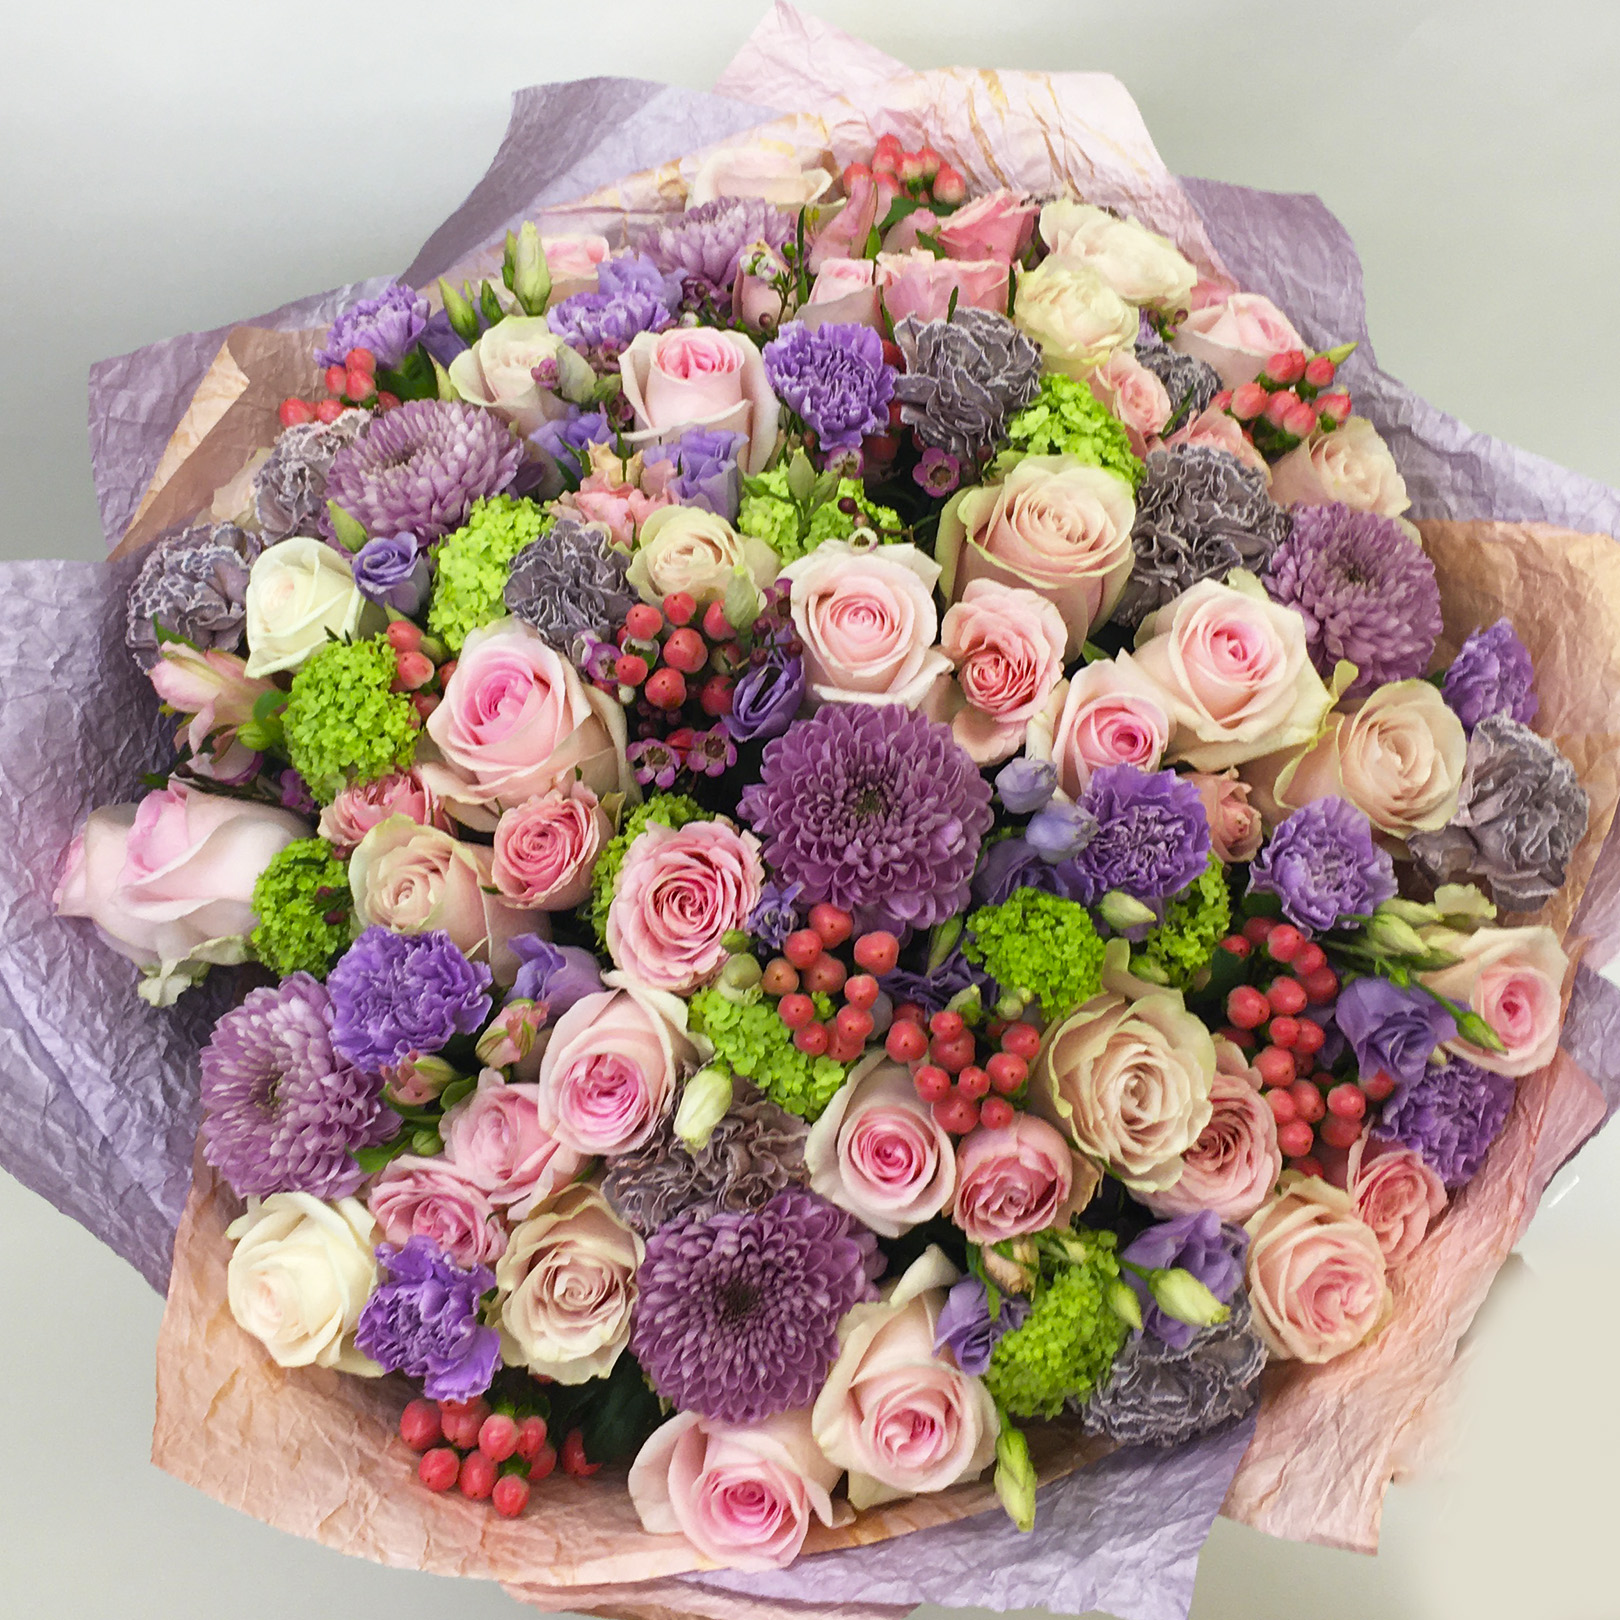 Необычные цветы доставка москва среди цветов интернет магазин